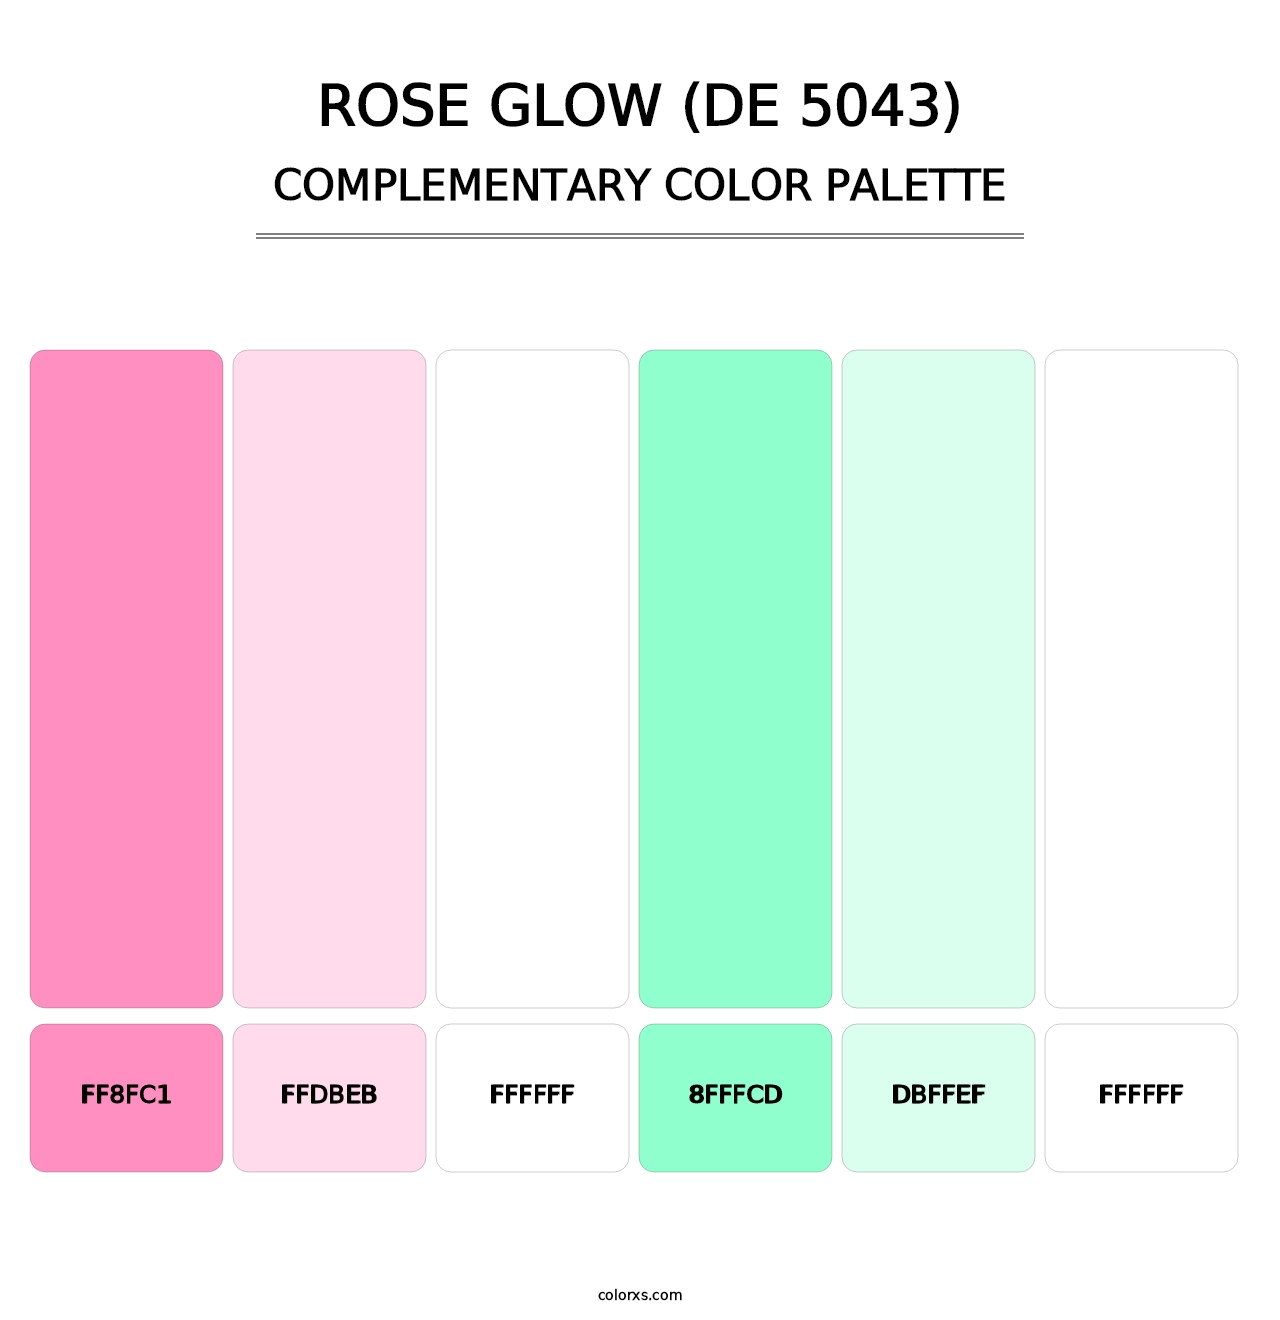 Rose Glow (DE 5043) - Complementary Color Palette